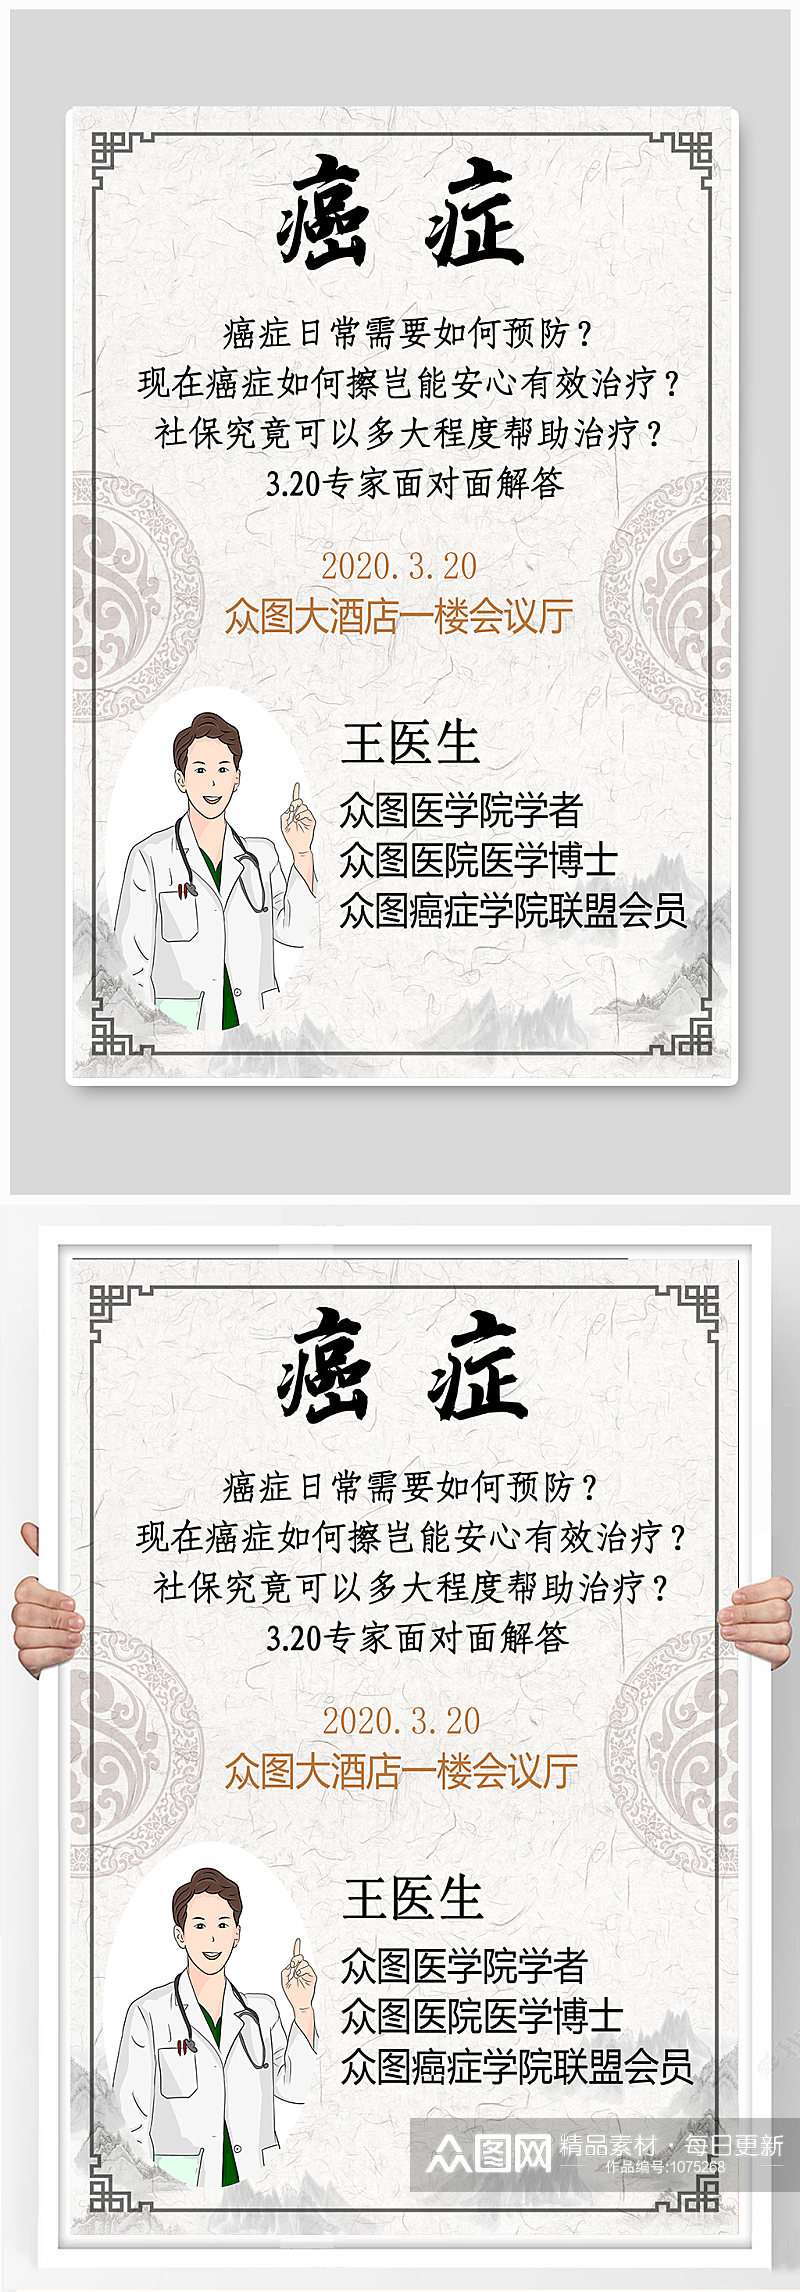 简约中国风中医癌症预防宣传公益讲座海报素材